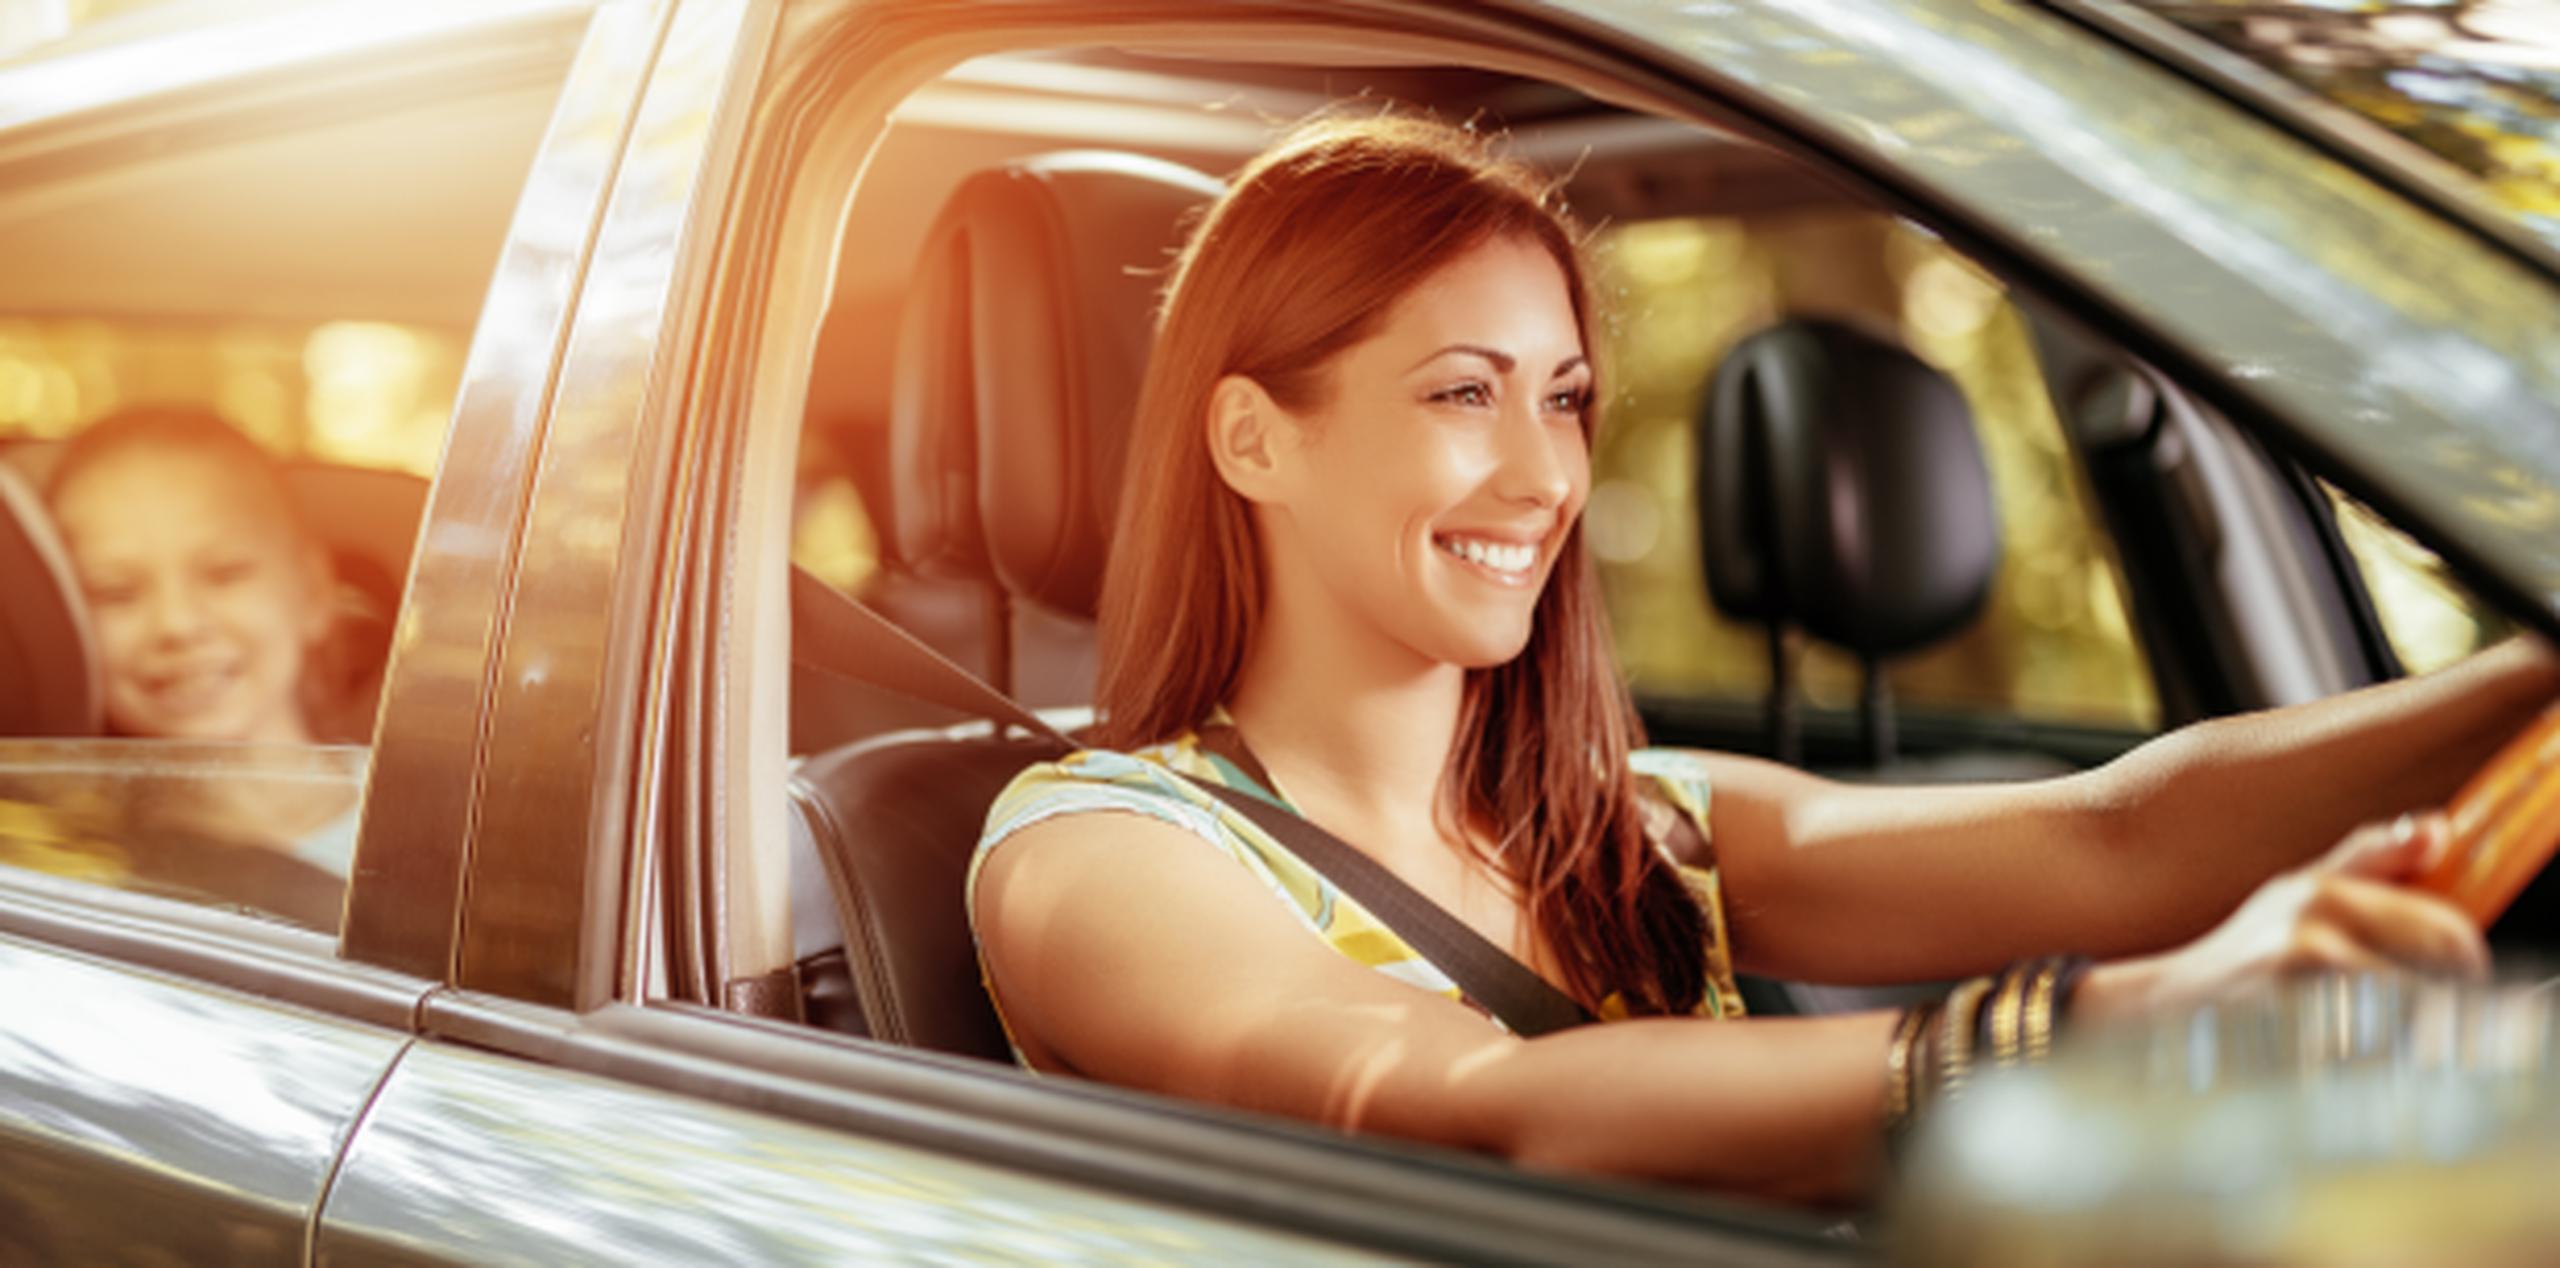 Los accidentes más frecuentes en las conductoras son salirse de la vía o los golpes por alcance. (Shutterstock)